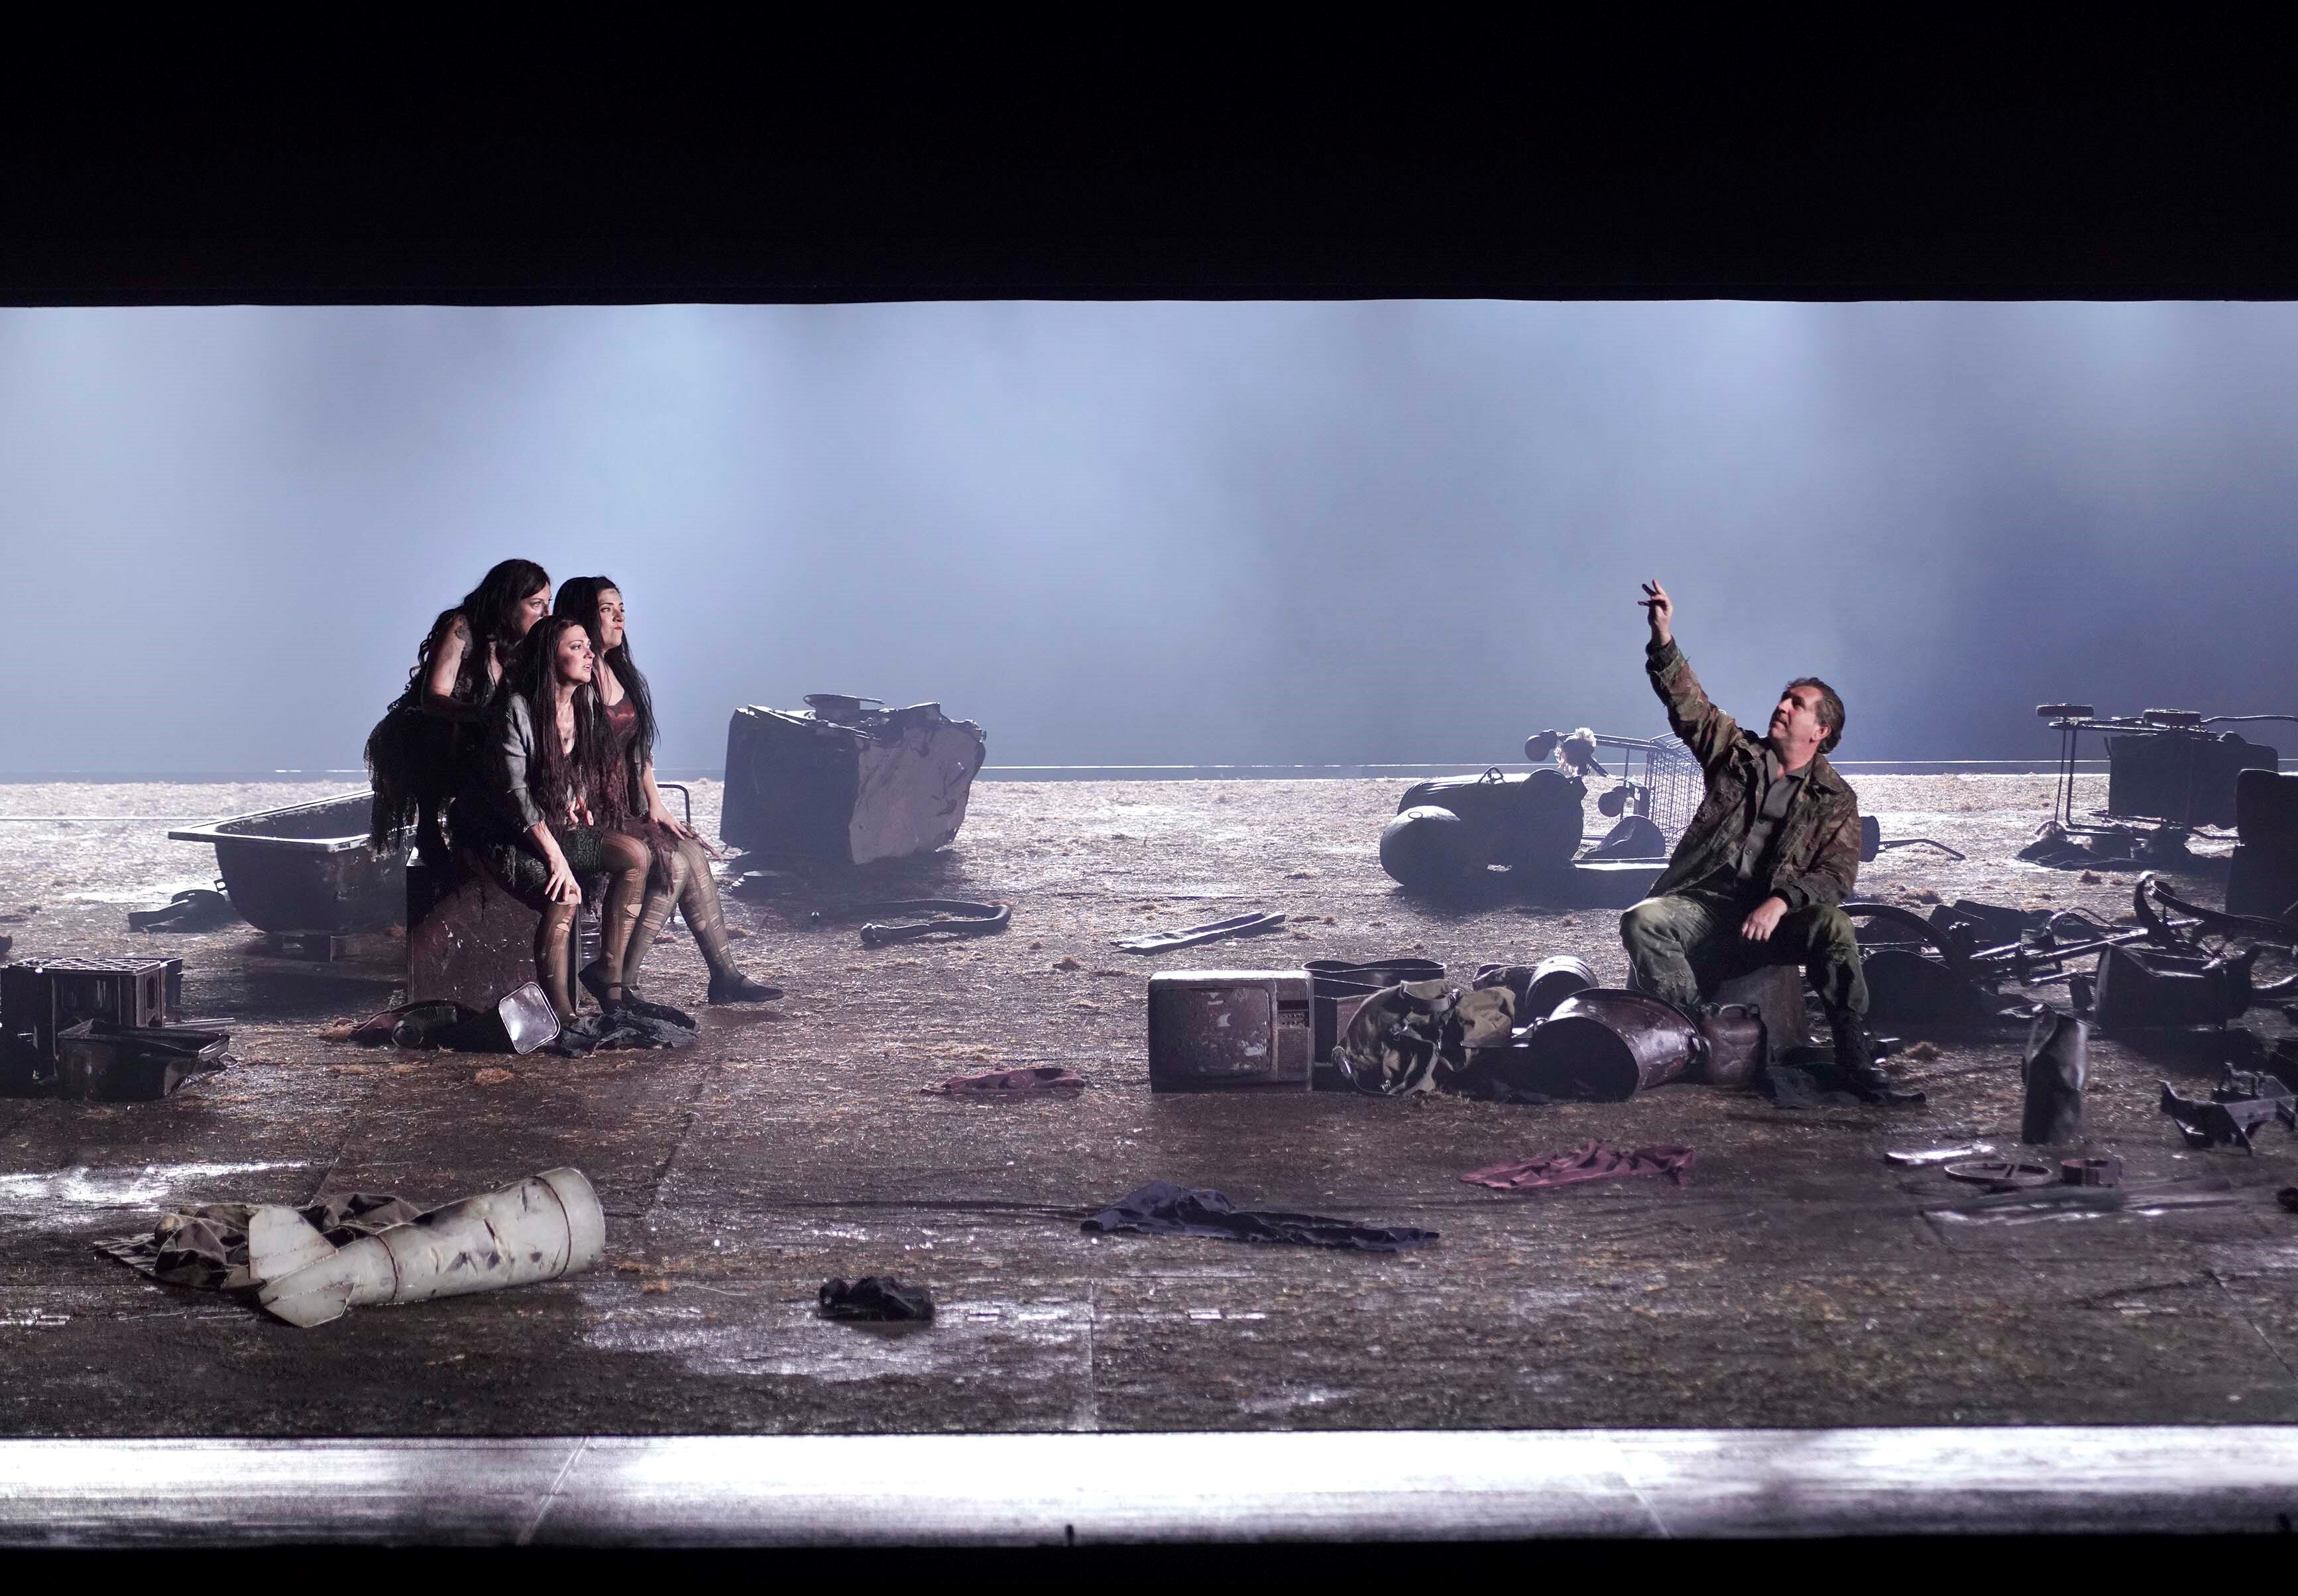 El encuentro entre las hijas del Rin y Siegfried, rodeados de desechos, en la escena primera del tercer acto.